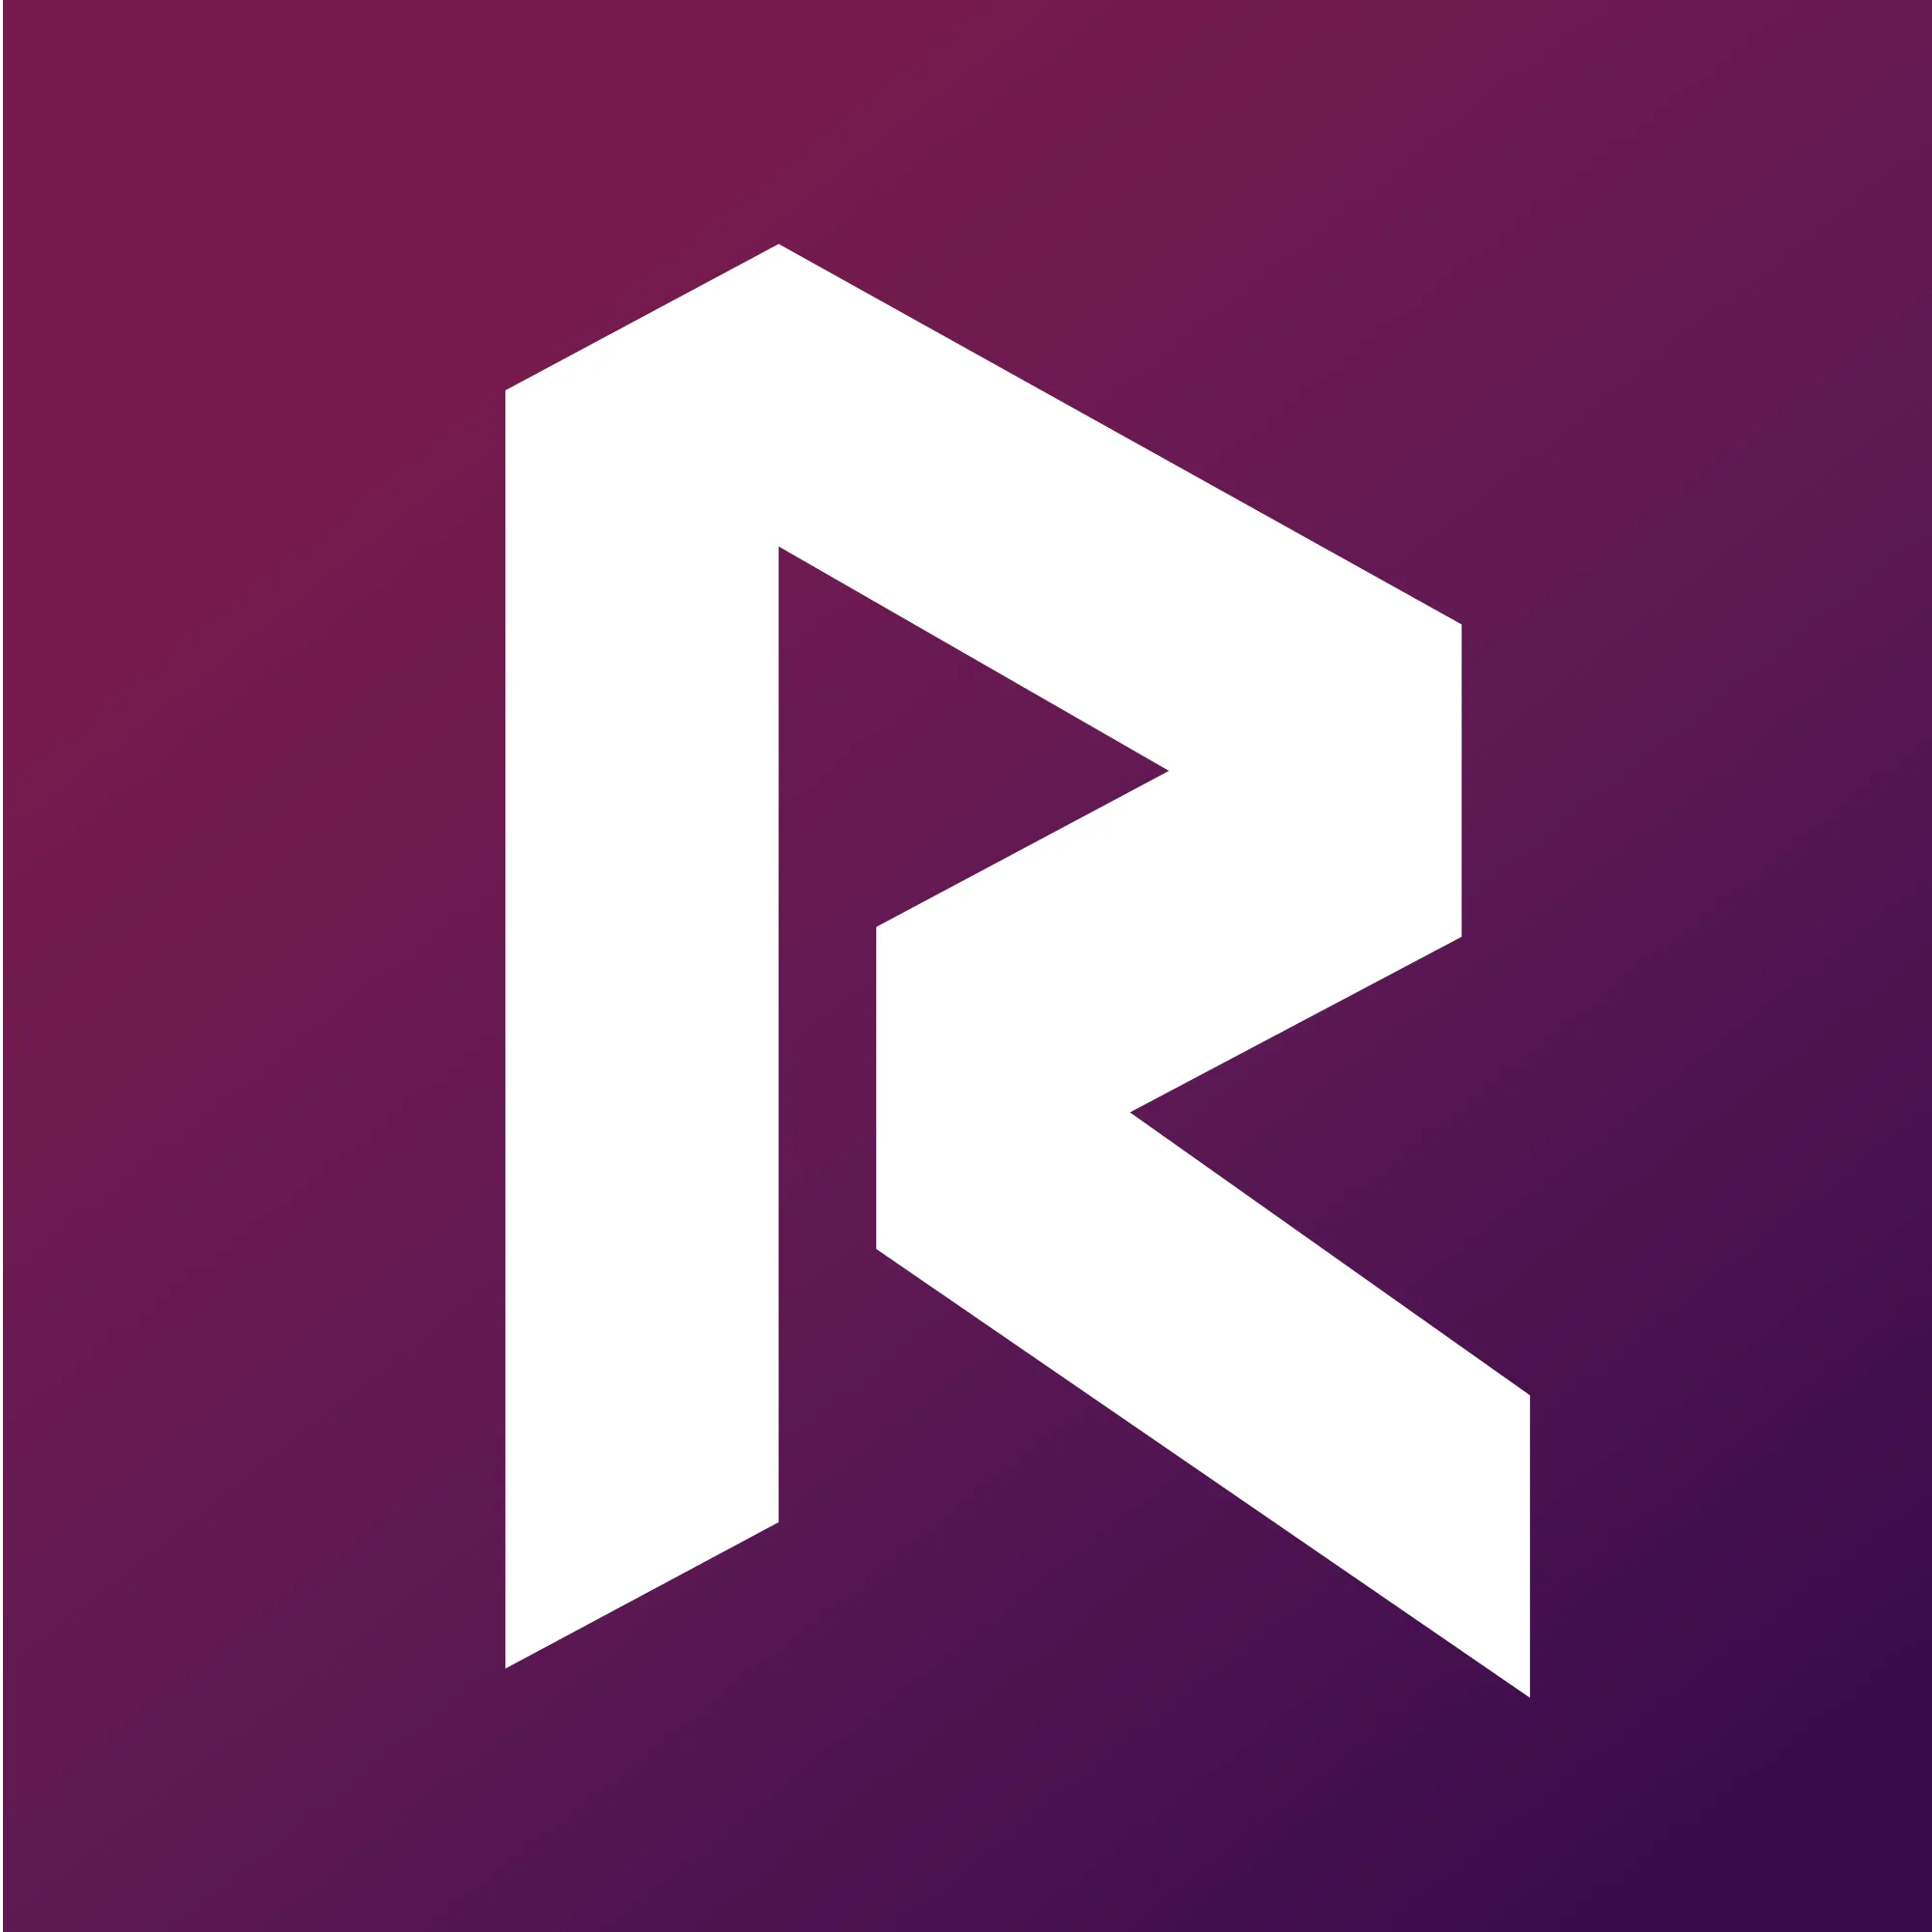 Revain (REV) logo